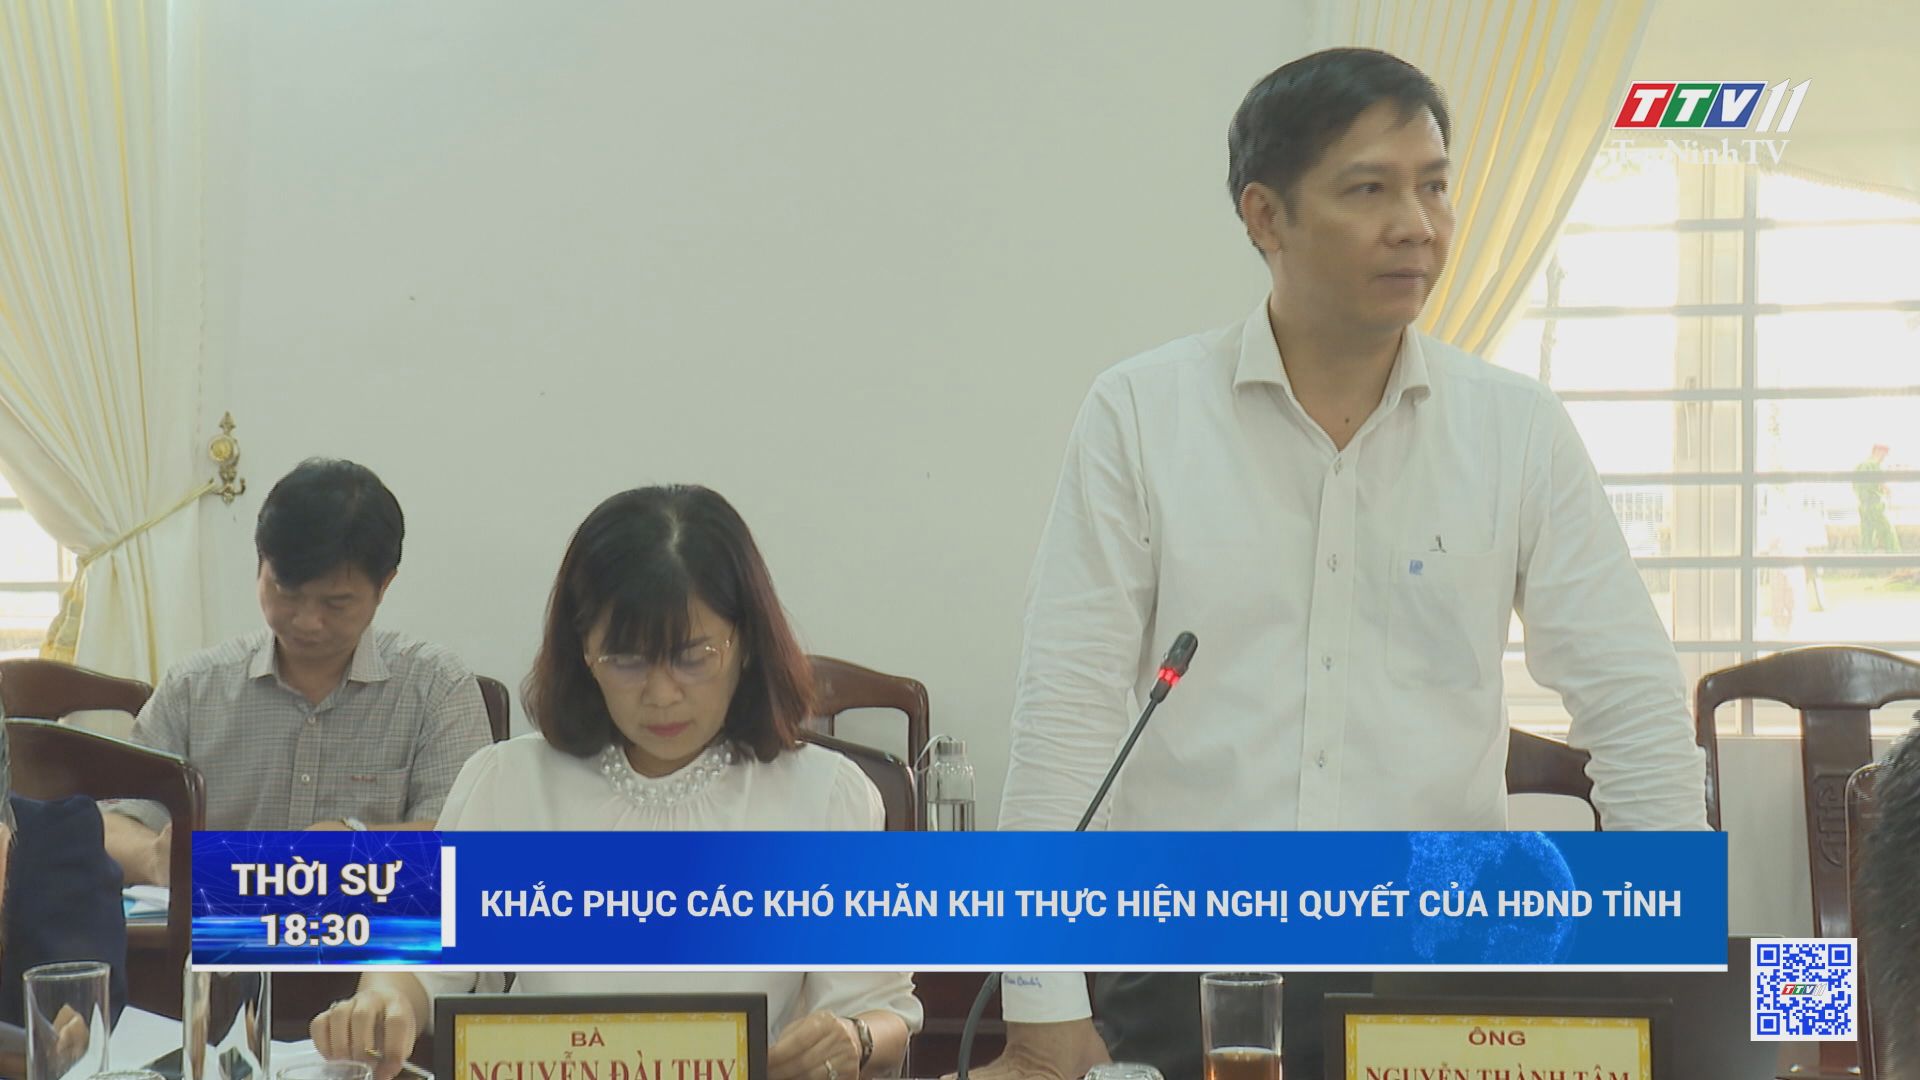 Khắc phục các khó khăn khi thực hiện nghị quyết của HĐND tỉnh | TayNinhTV